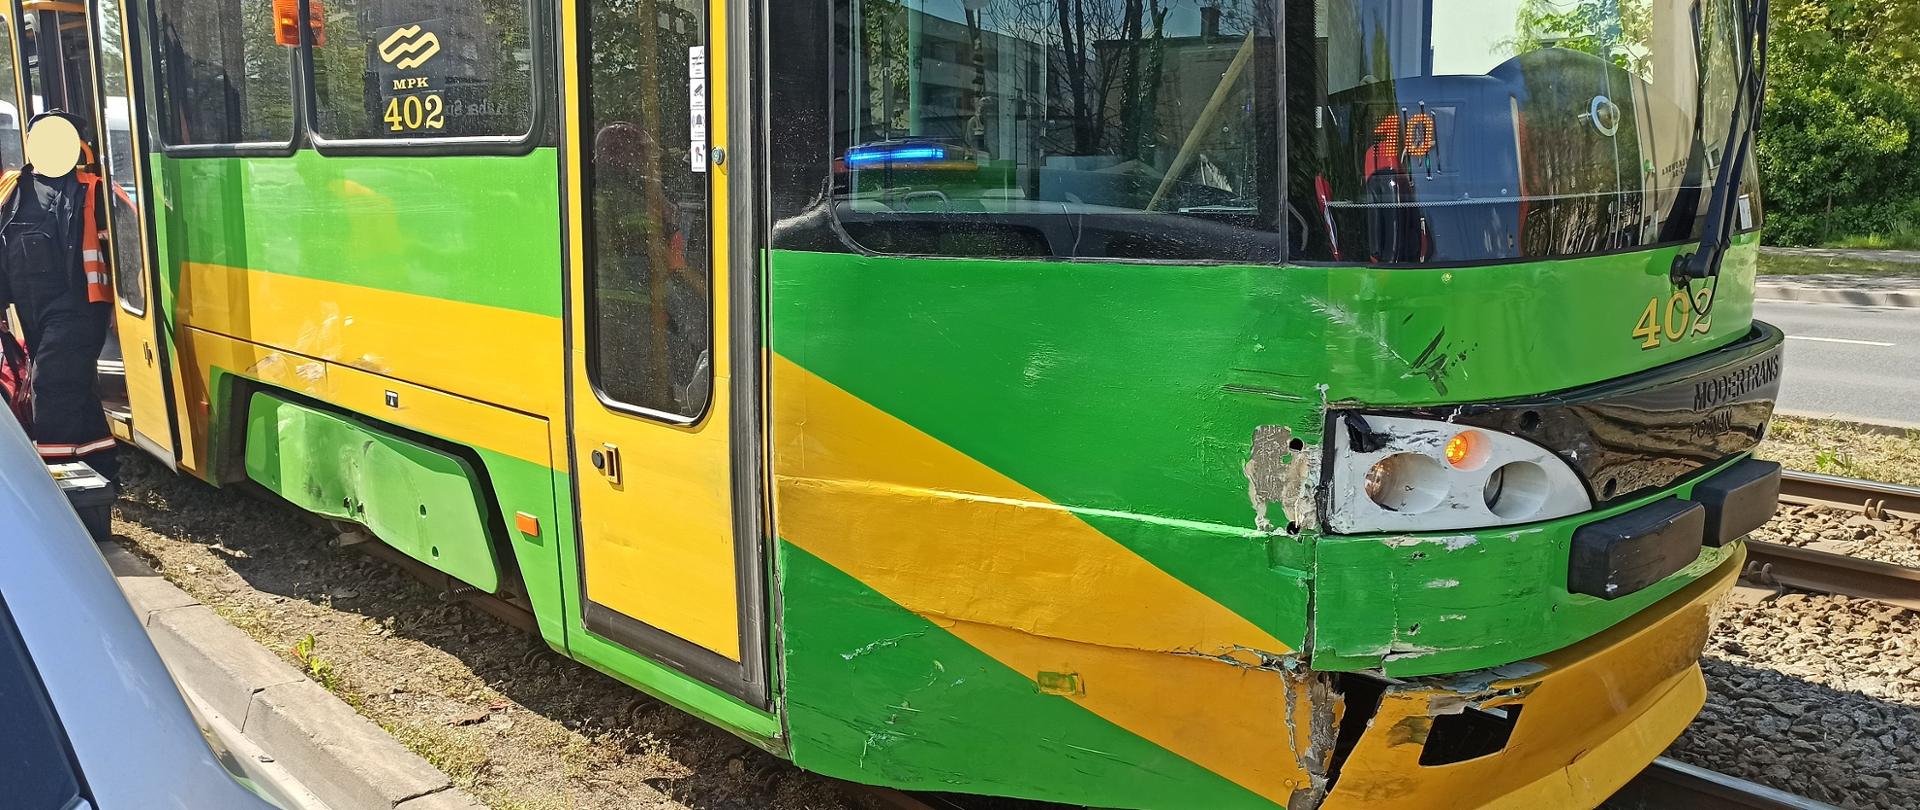 Zdjecie przedstawia uszkodzenie powstałe po zderzeniu na tramwaju